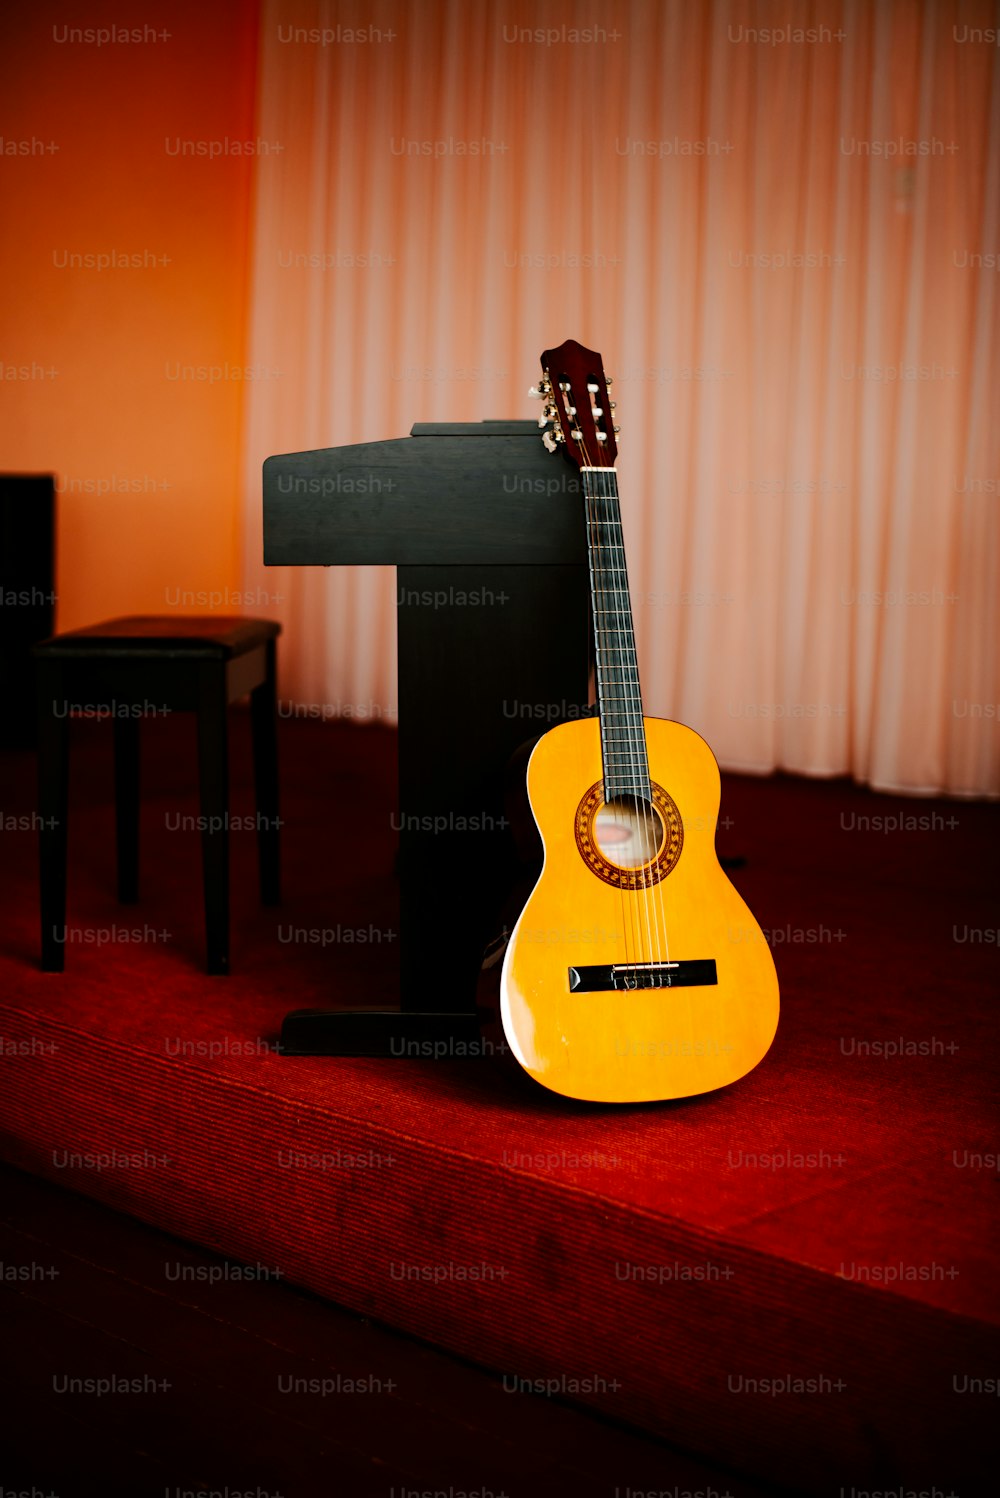 Eine gelbe Gitarre, die auf einem roten Teppich sitzt